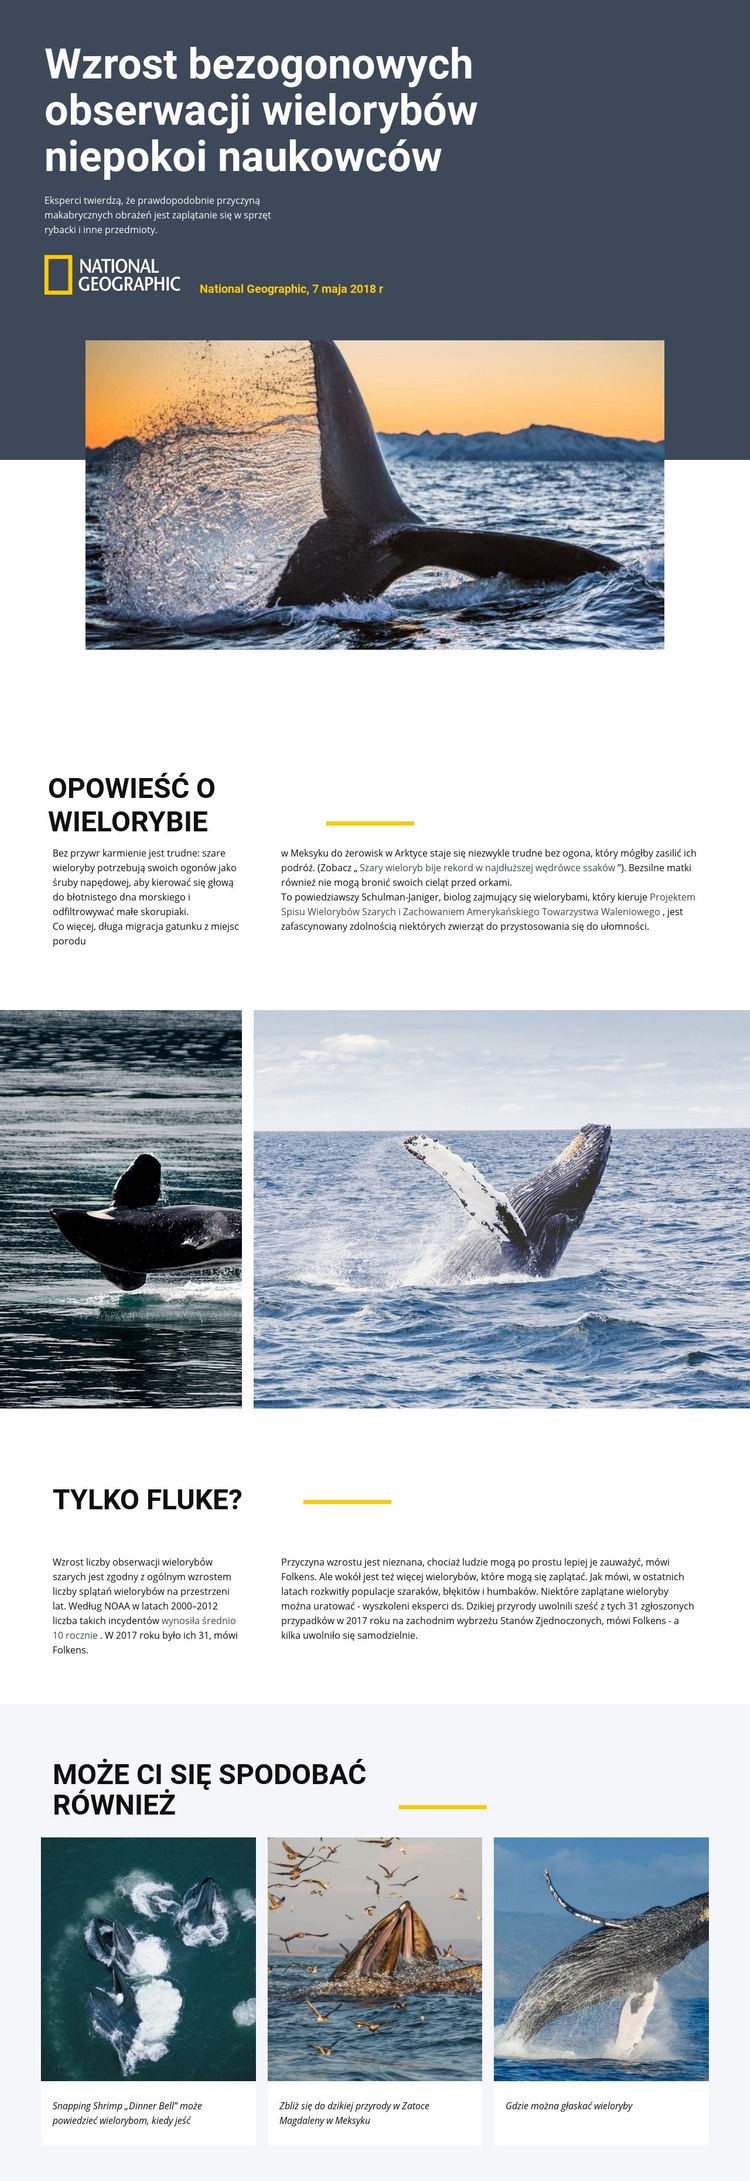 Centrum obserwacji wielorybów Szablon HTML5